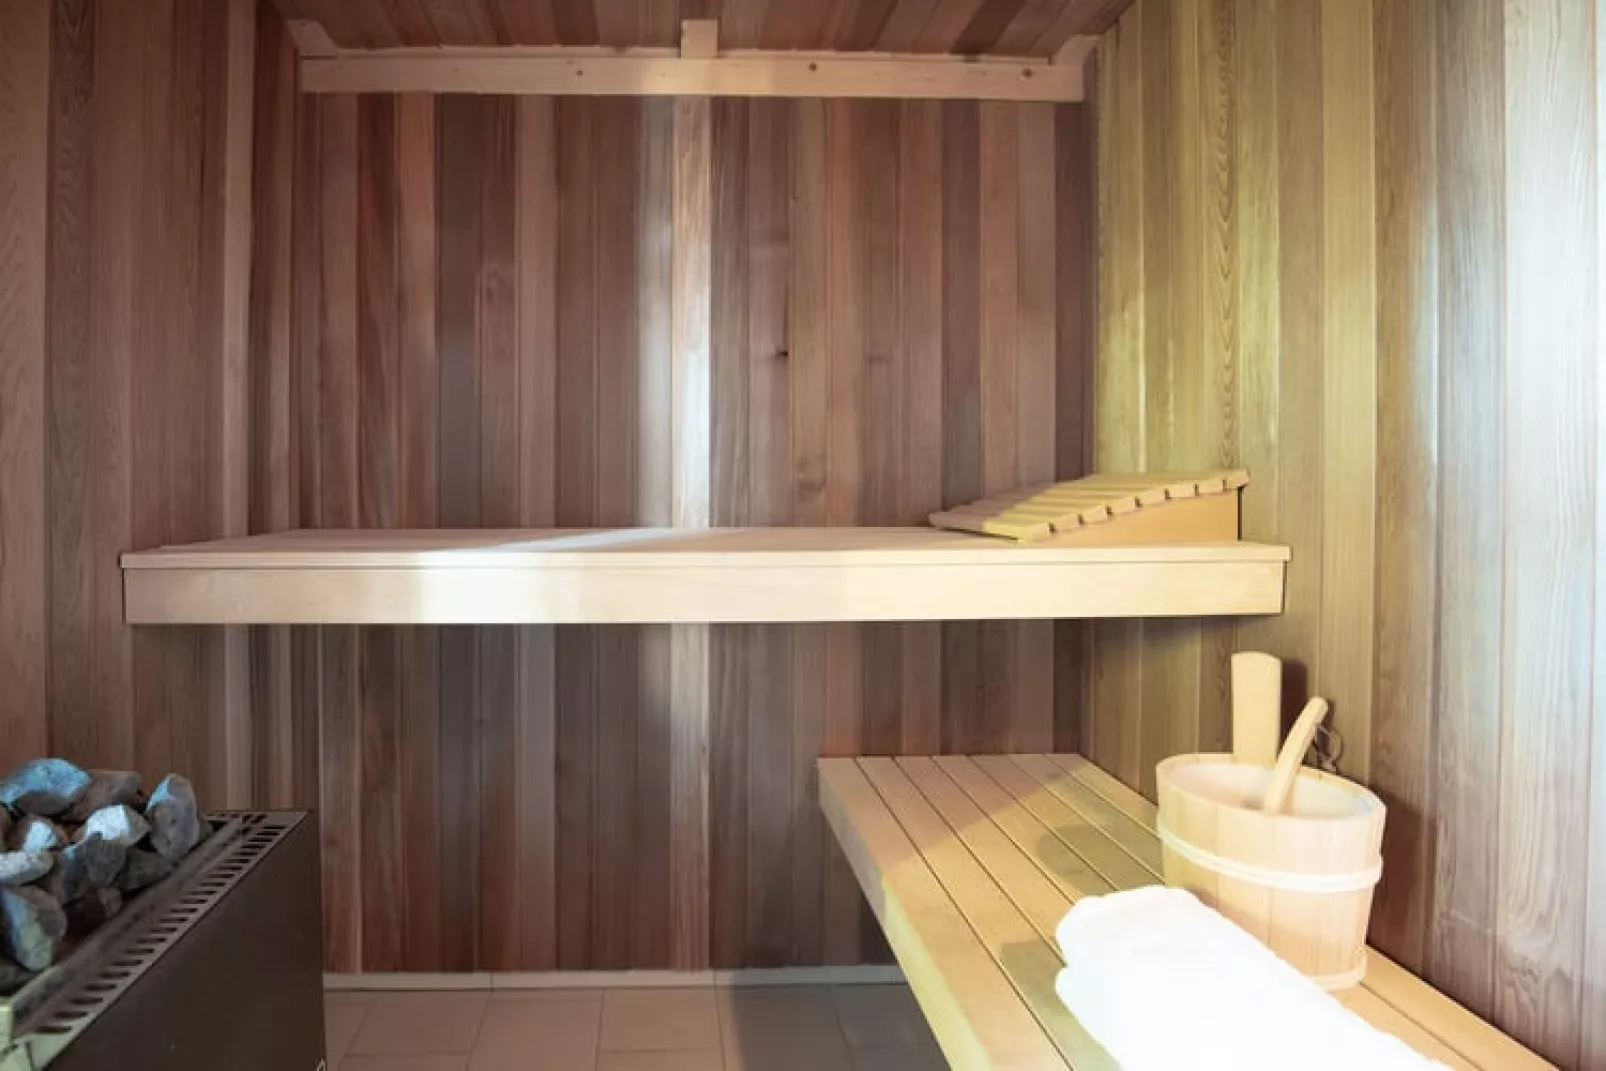 Reihenhaus Basstölpel 4 Personen-Sauna